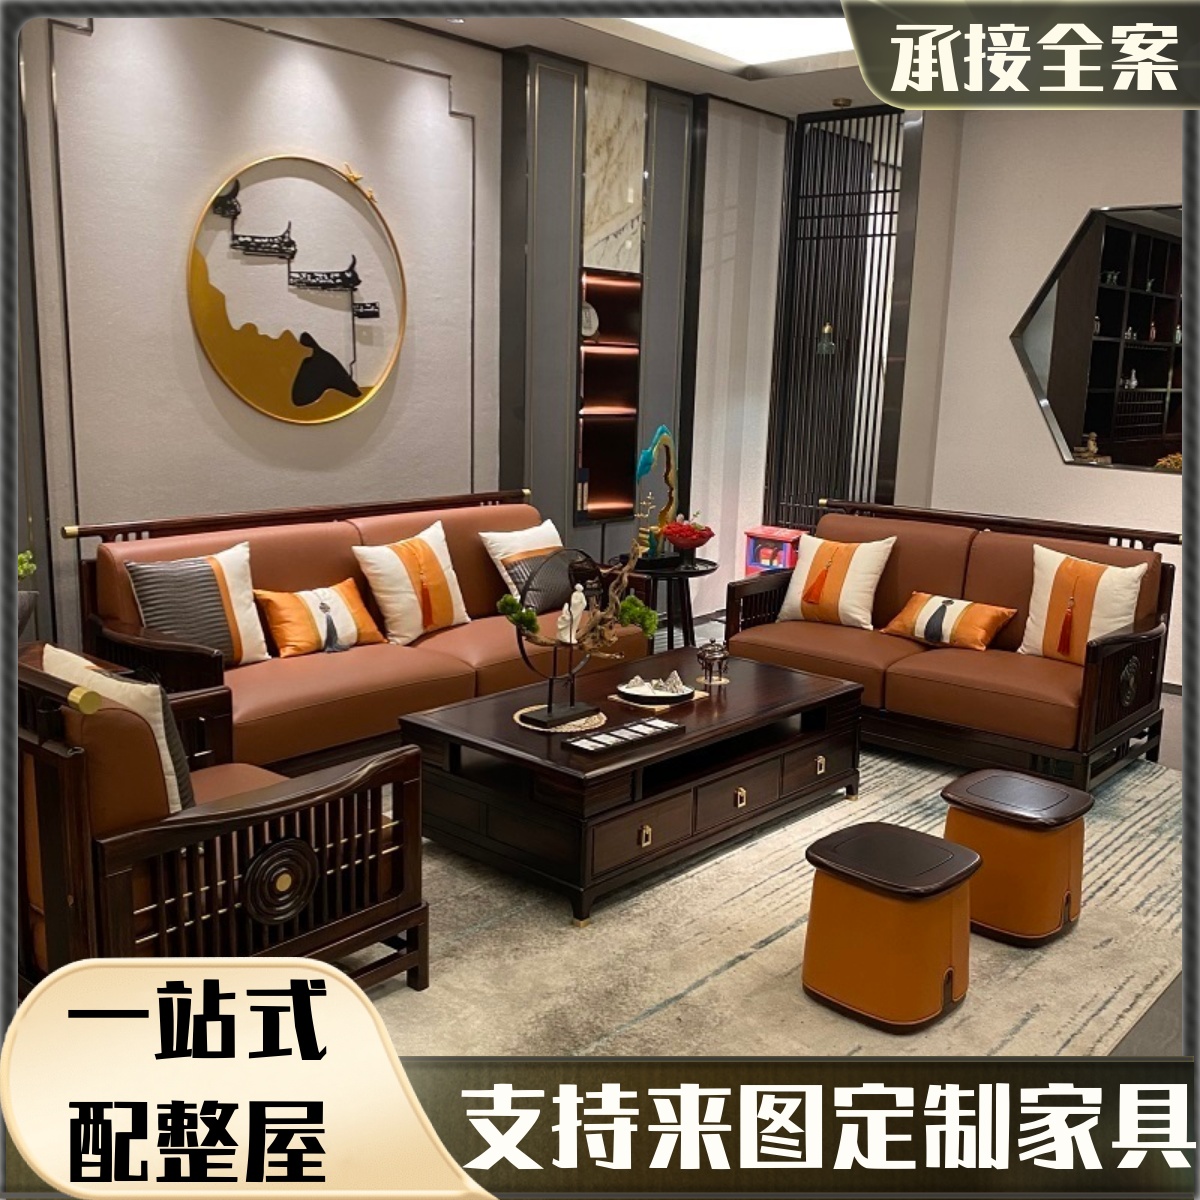 新中式实木沙发组合轻奢小户型别墅简约现代客厅会所全屋家具套装